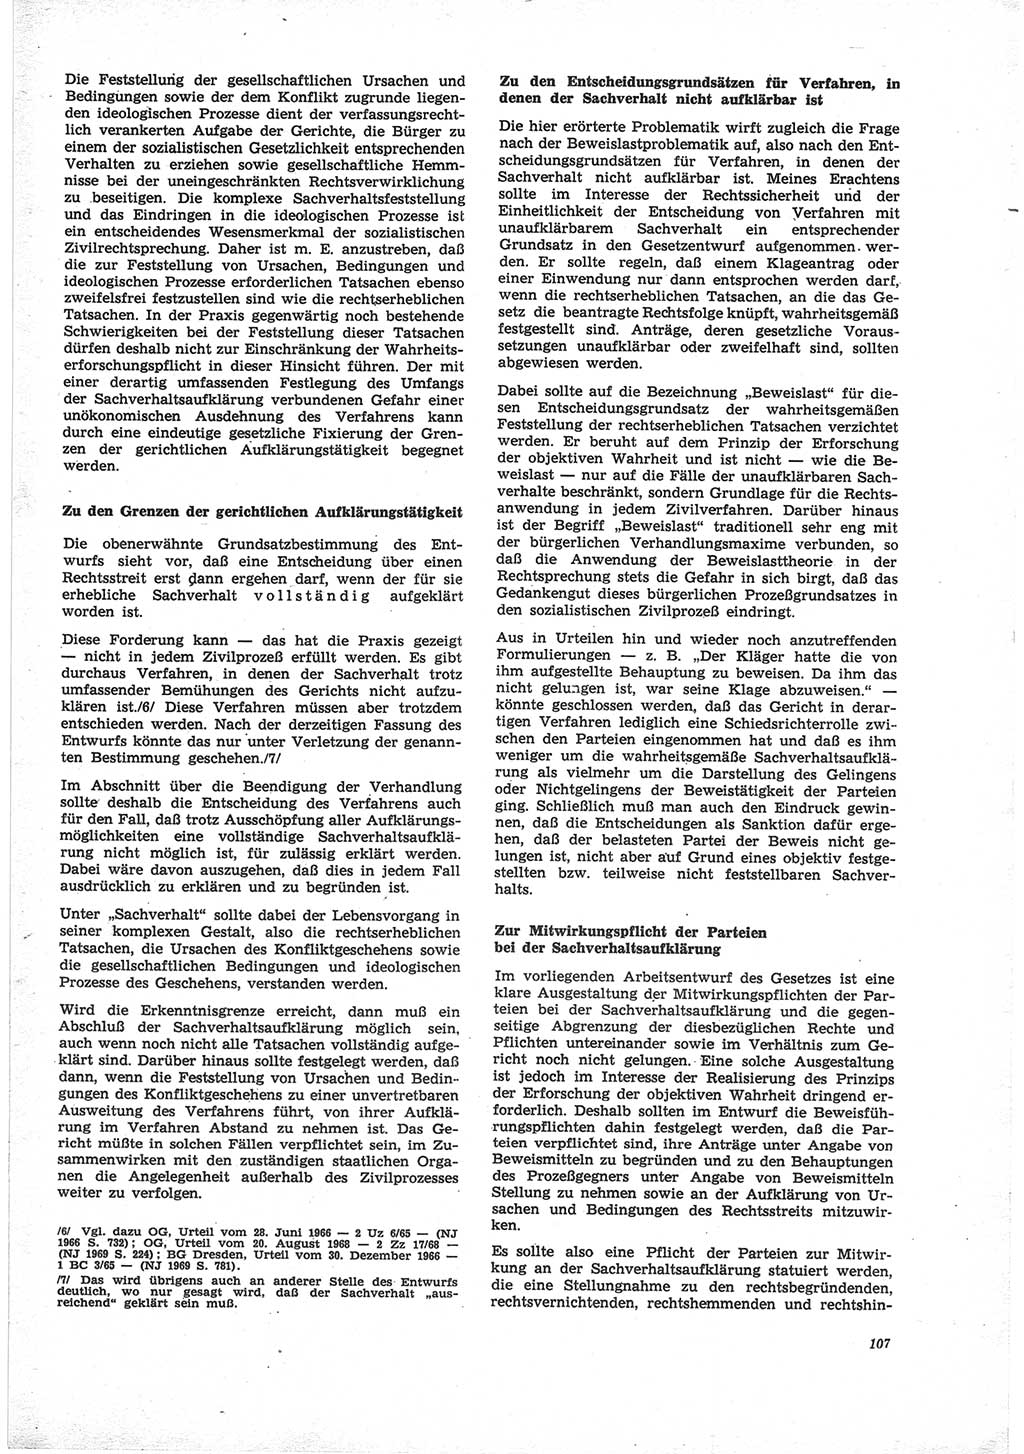 Neue Justiz (NJ), Zeitschrift für Recht und Rechtswissenschaft [Deutsche Demokratische Republik (DDR)], 25. Jahrgang 1971, Seite 107 (NJ DDR 1971, S. 107)